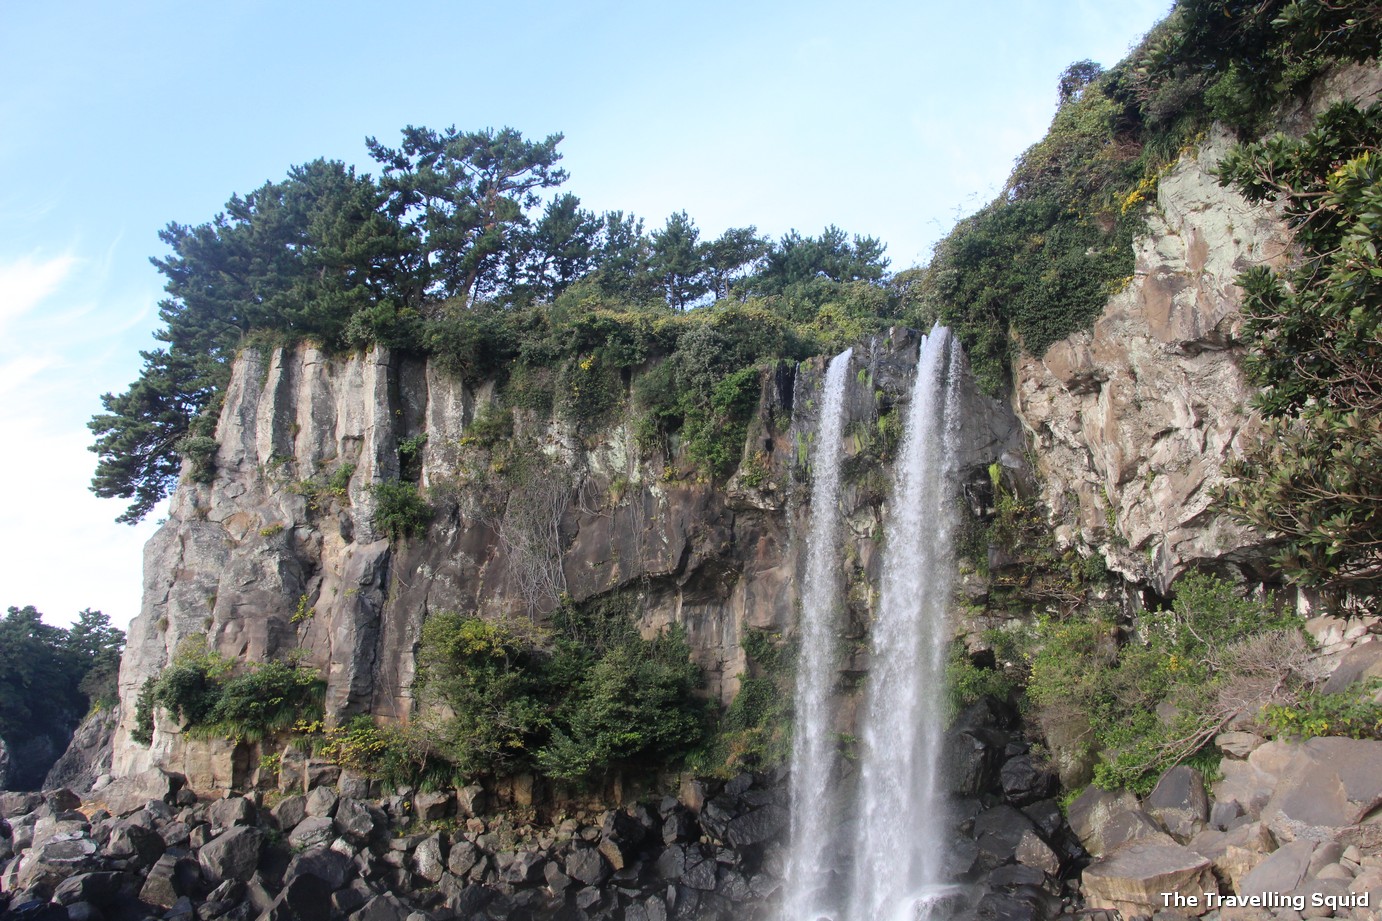 Jeongbang waterfall in Jeju